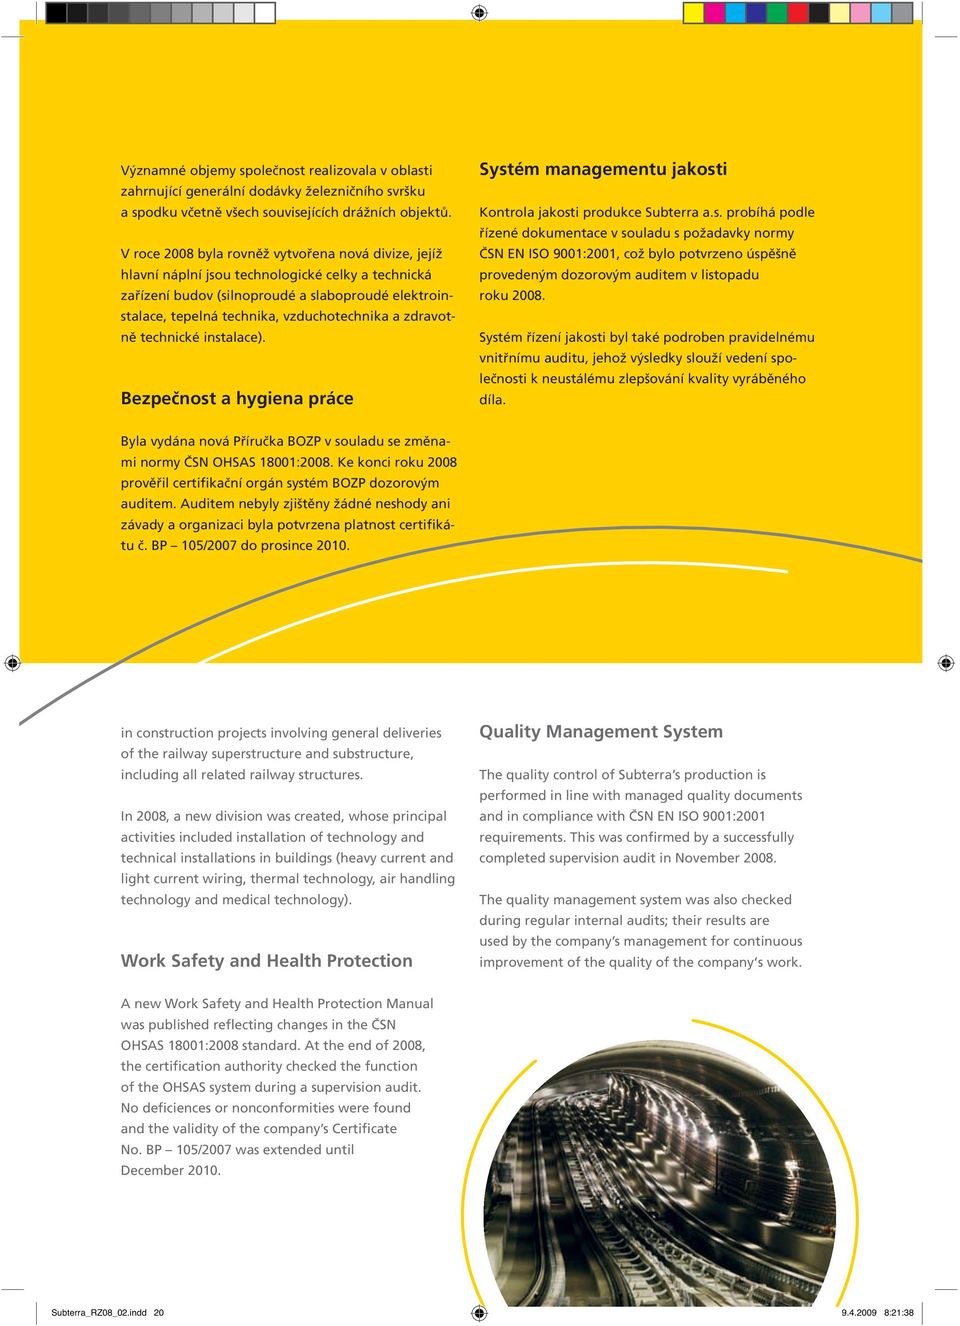 zdravotně technické instalace). Bezpečnost a hygiena práce Systém managementu jakosti Kontrola jakosti produkce Subterra a.s. probíhá podle řízené dokumentace v souladu s požadavky normy ČSN EN ISO 9001:2001, což bylo potvrzeno úspěšně provedeným dozorovým auditem v listopadu roku 2008.